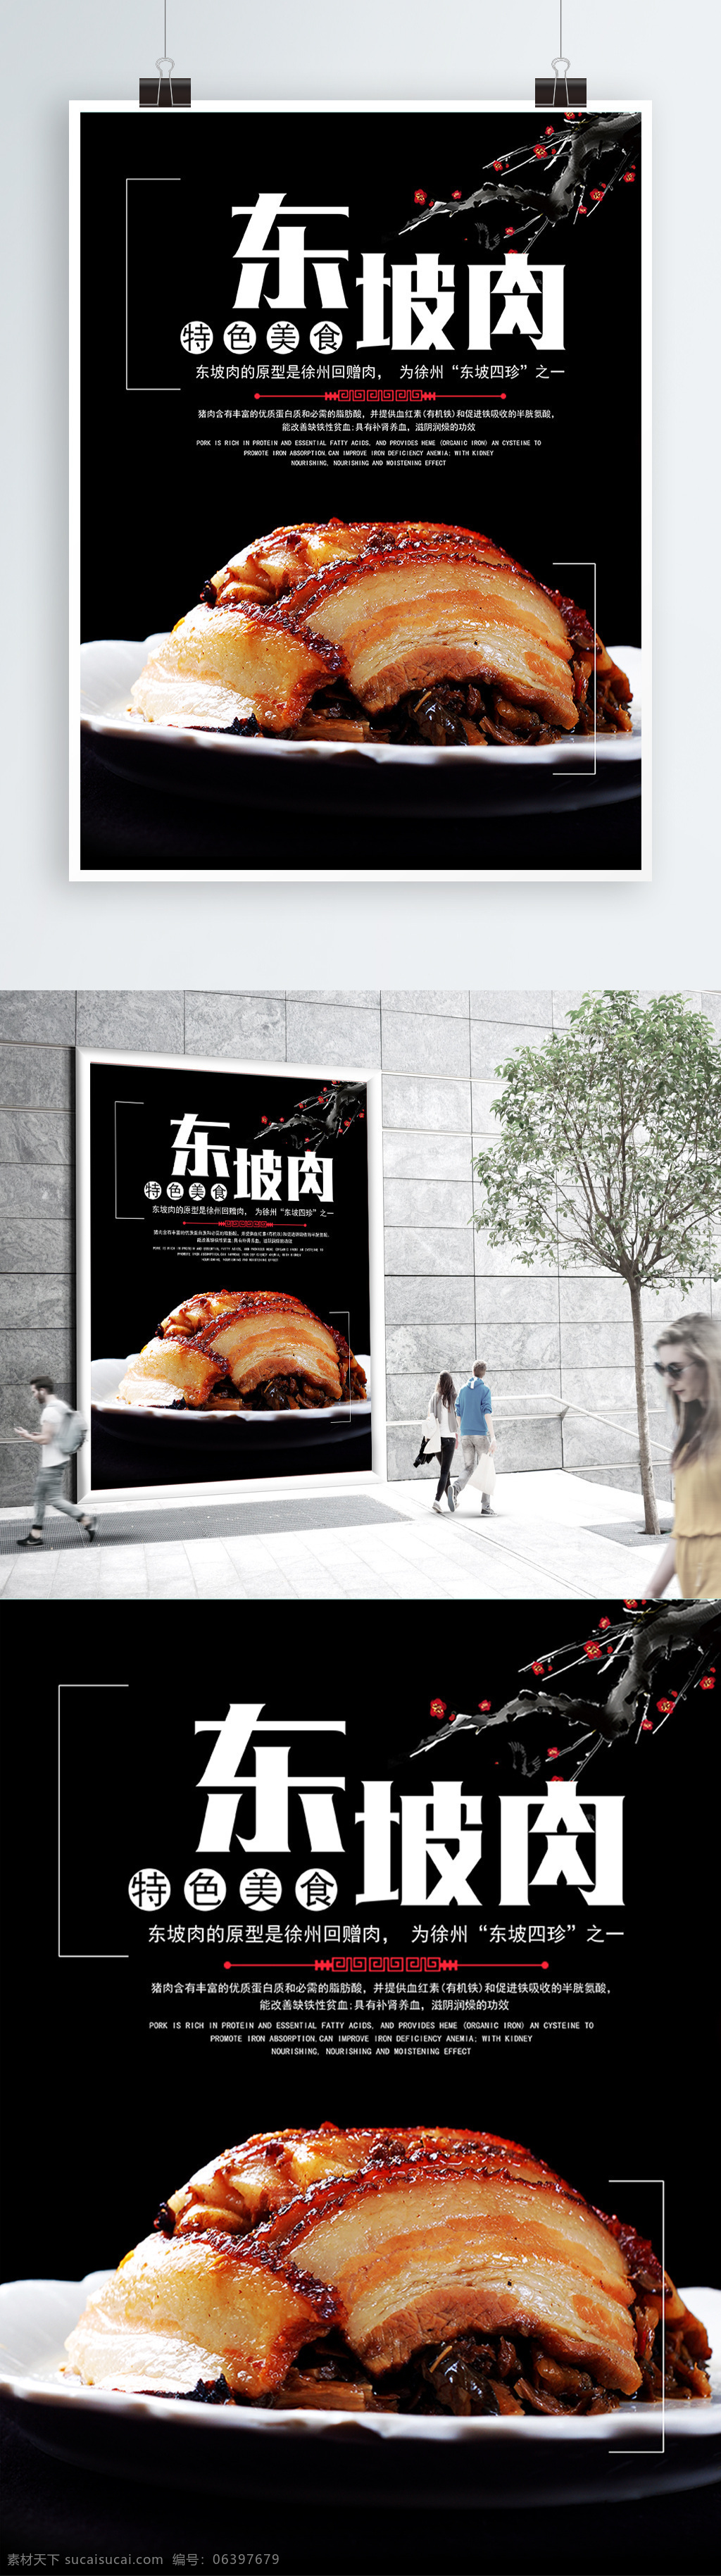 创意 时尚 美食 东坡肉 中国风海报 美食海报 海报 东坡 肉 杭州东坡肉 东坡肉画 东坡肉吃 吃东坡肉 东坡肉馆 东坡肉图 东坡肉墙 东坡肉海报